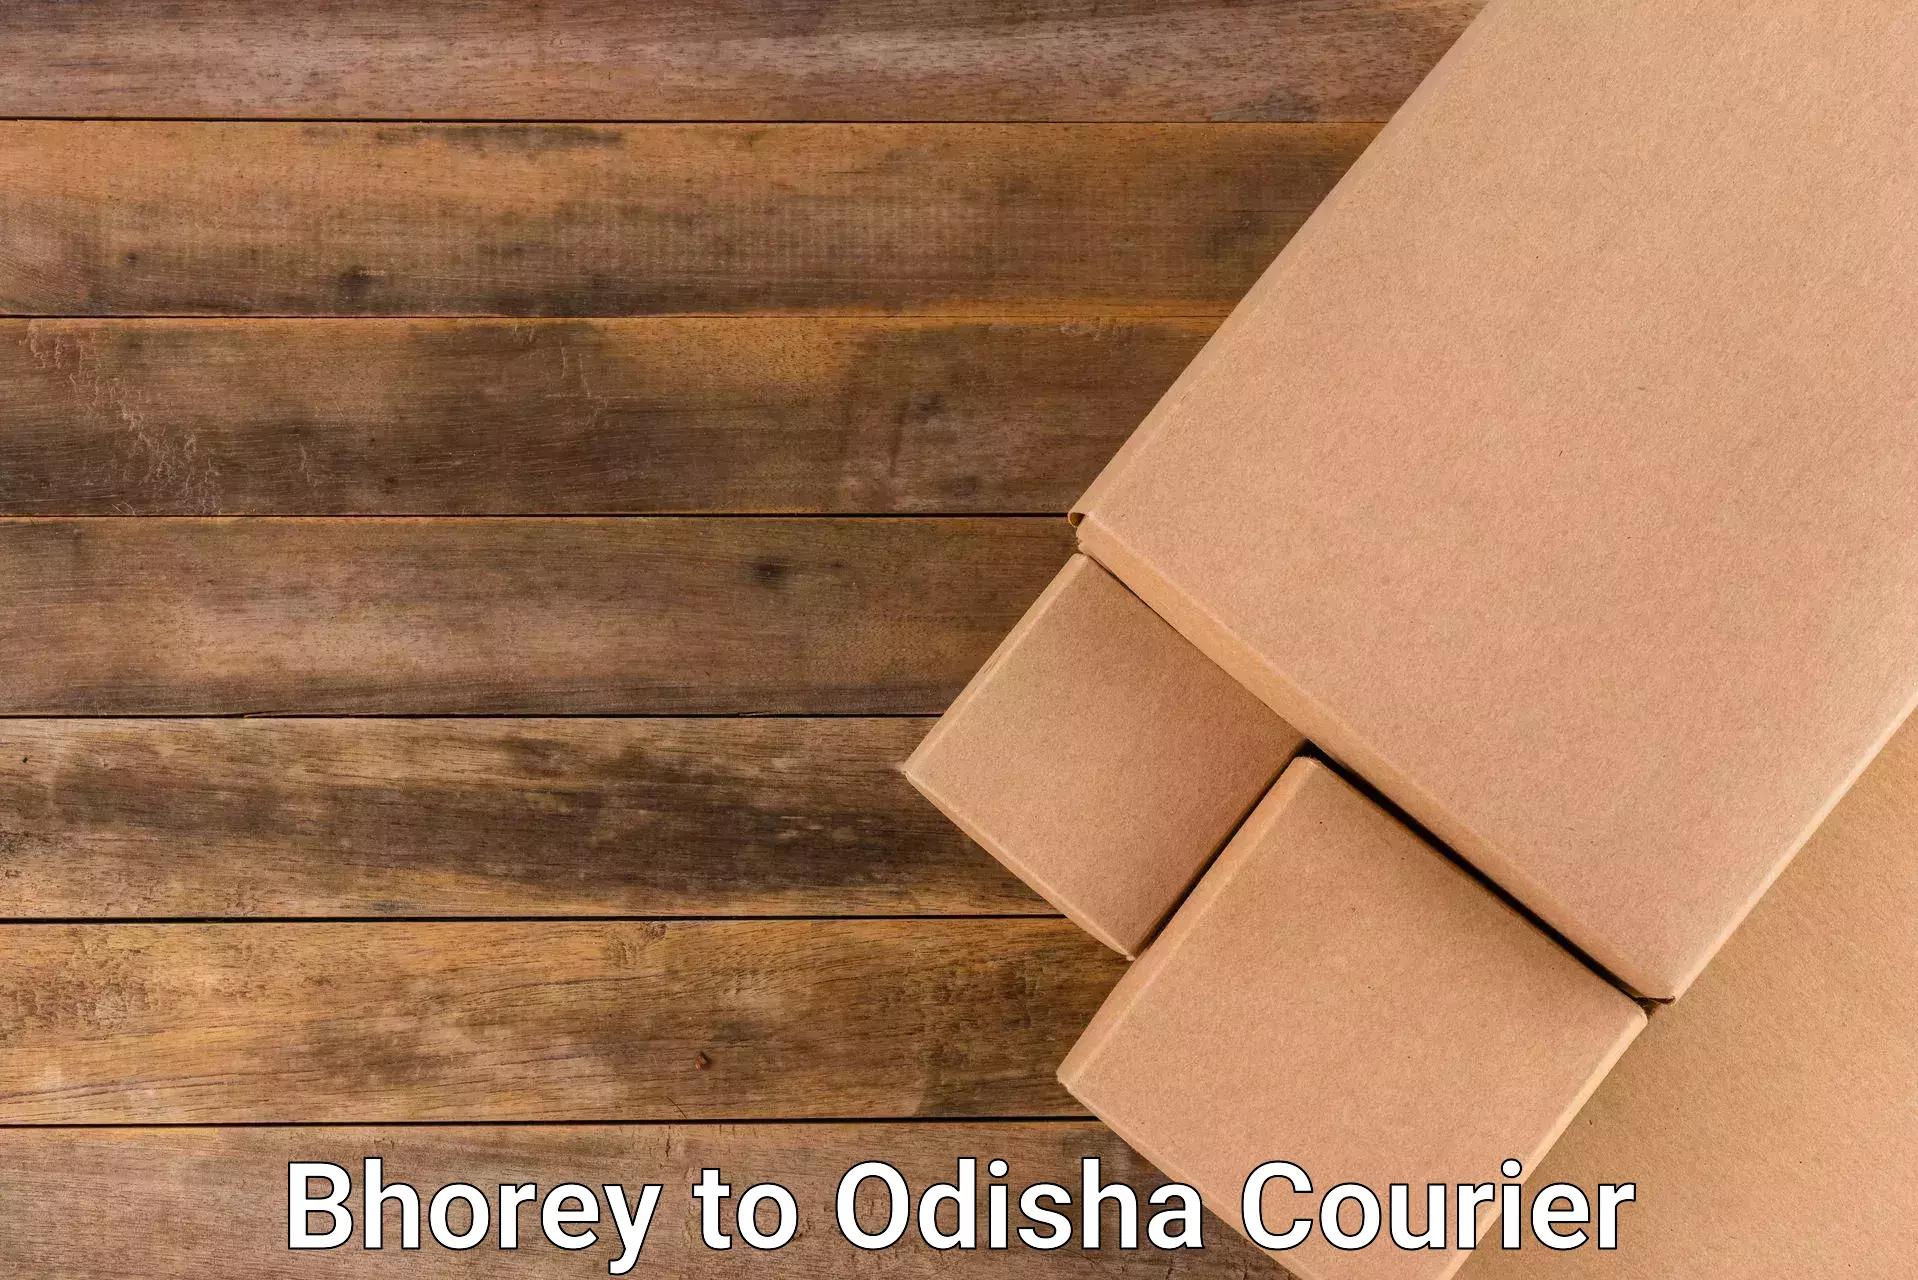 24-hour courier service Bhorey to Odisha